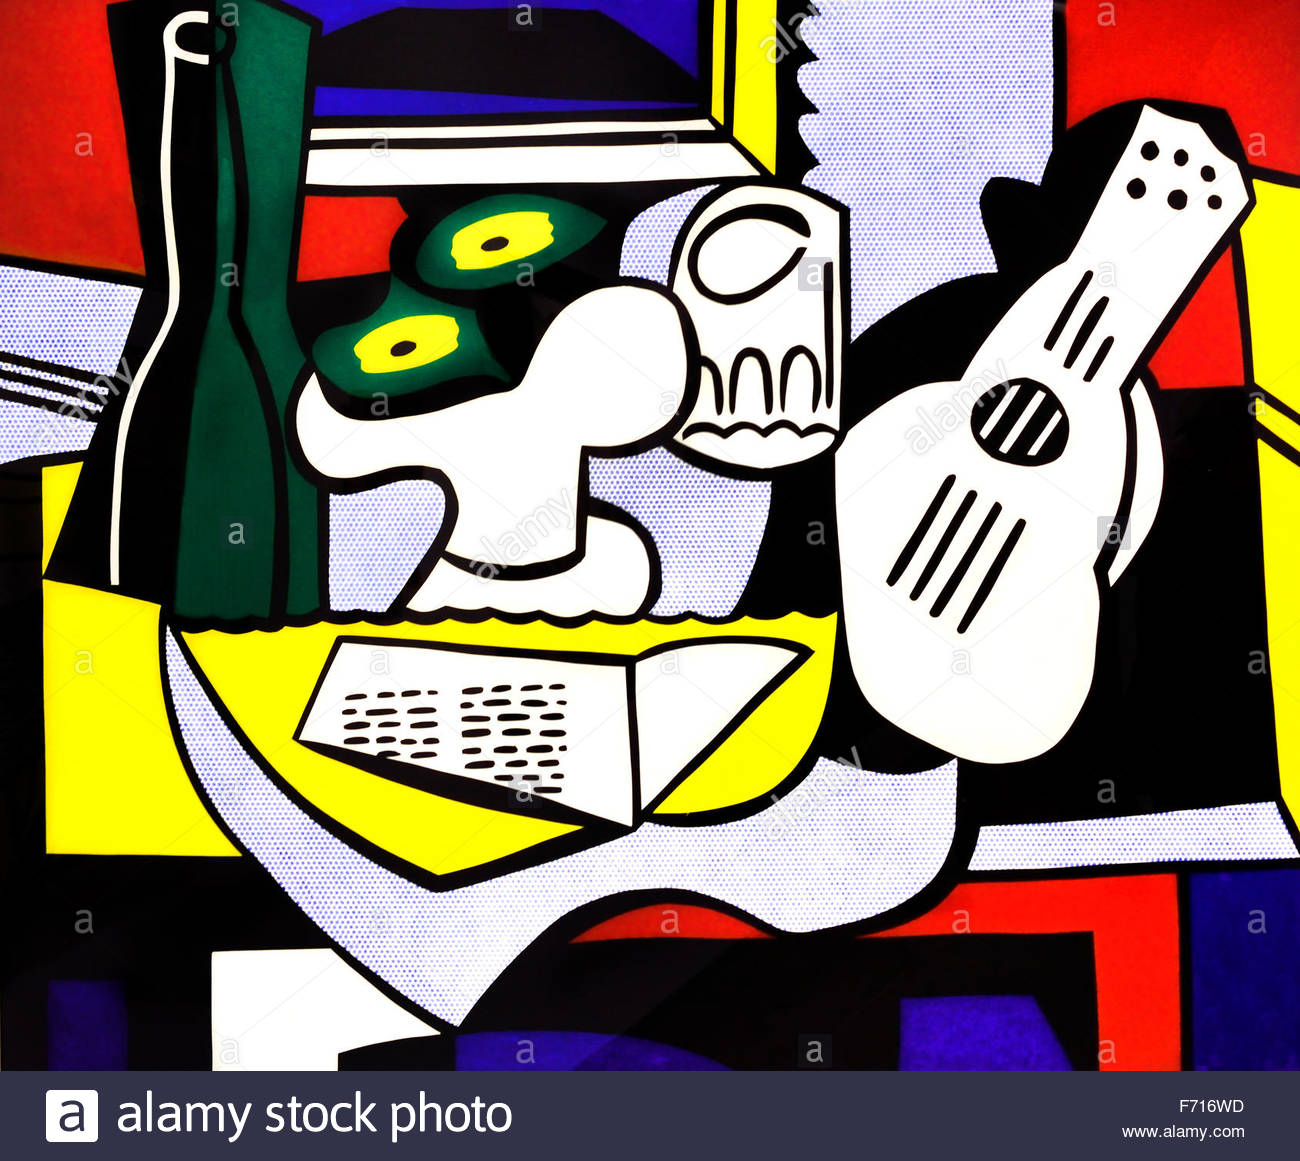 Image result for Roy Lichtenstein (1923)